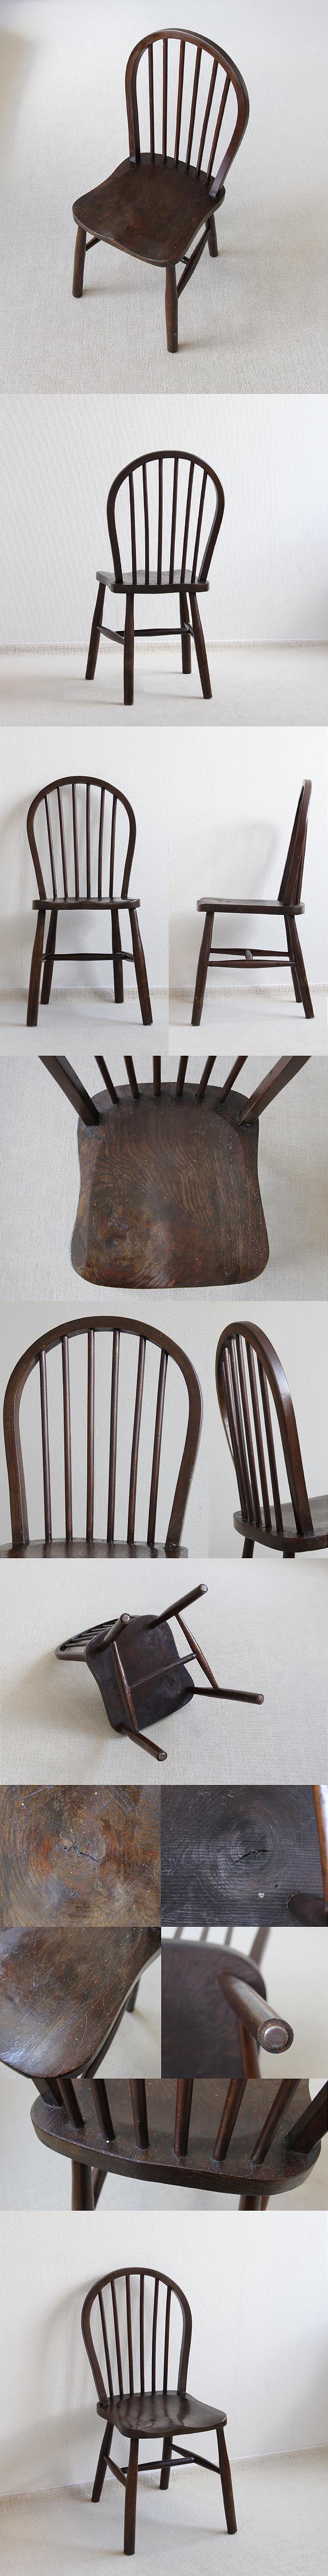 イギリス アンティーク フープバックチェア ウィンザー 椅子 英国 家具「古い木肌がステキ」V-602